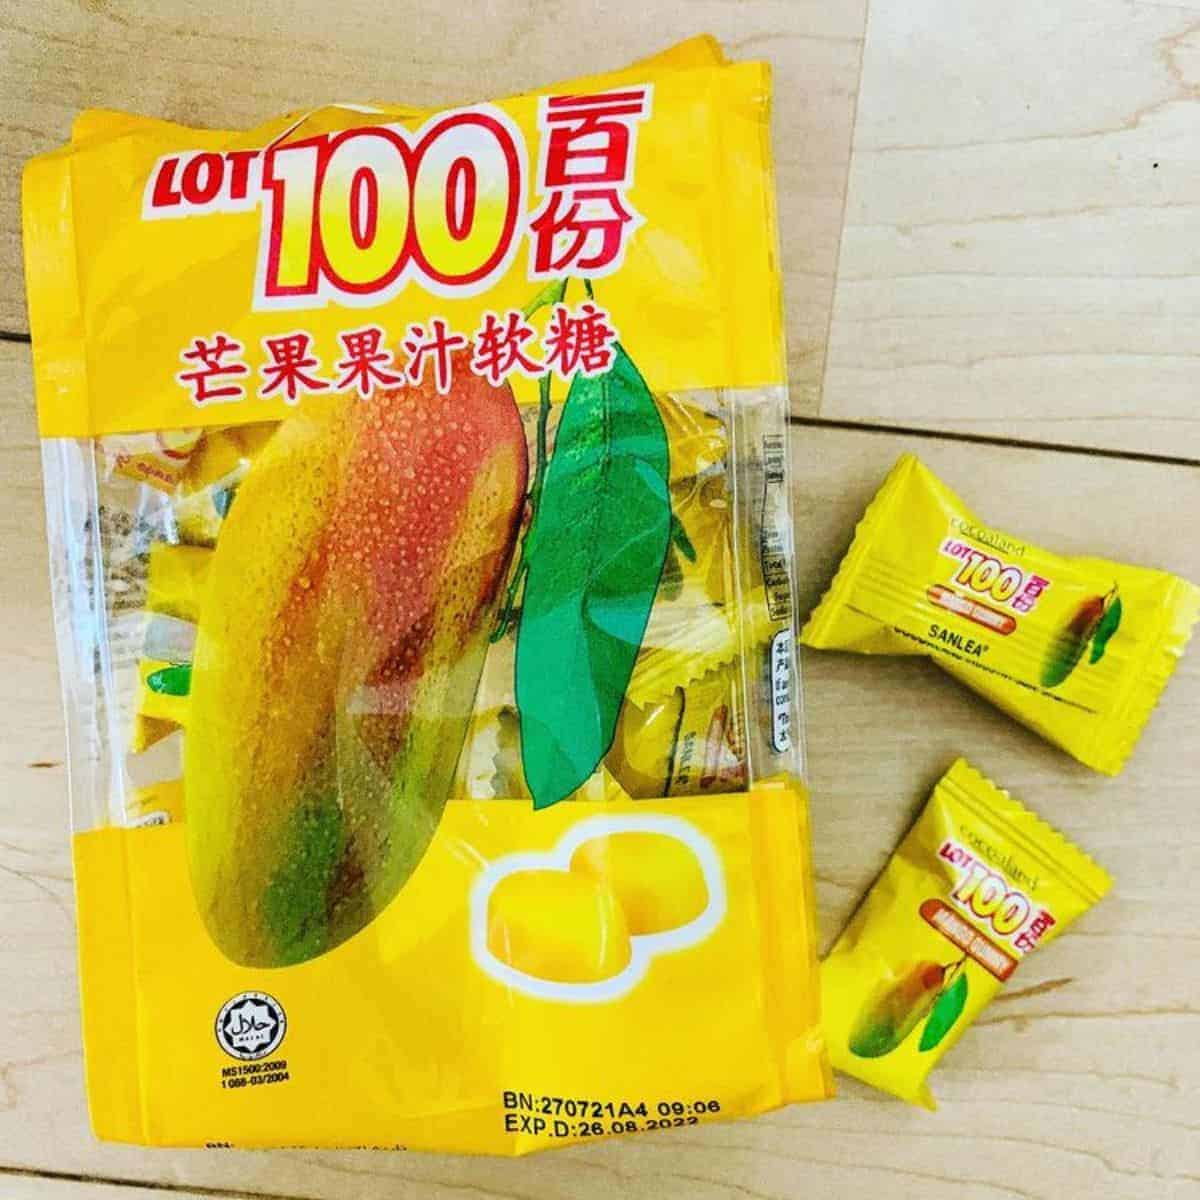 cocoaland mango gummy